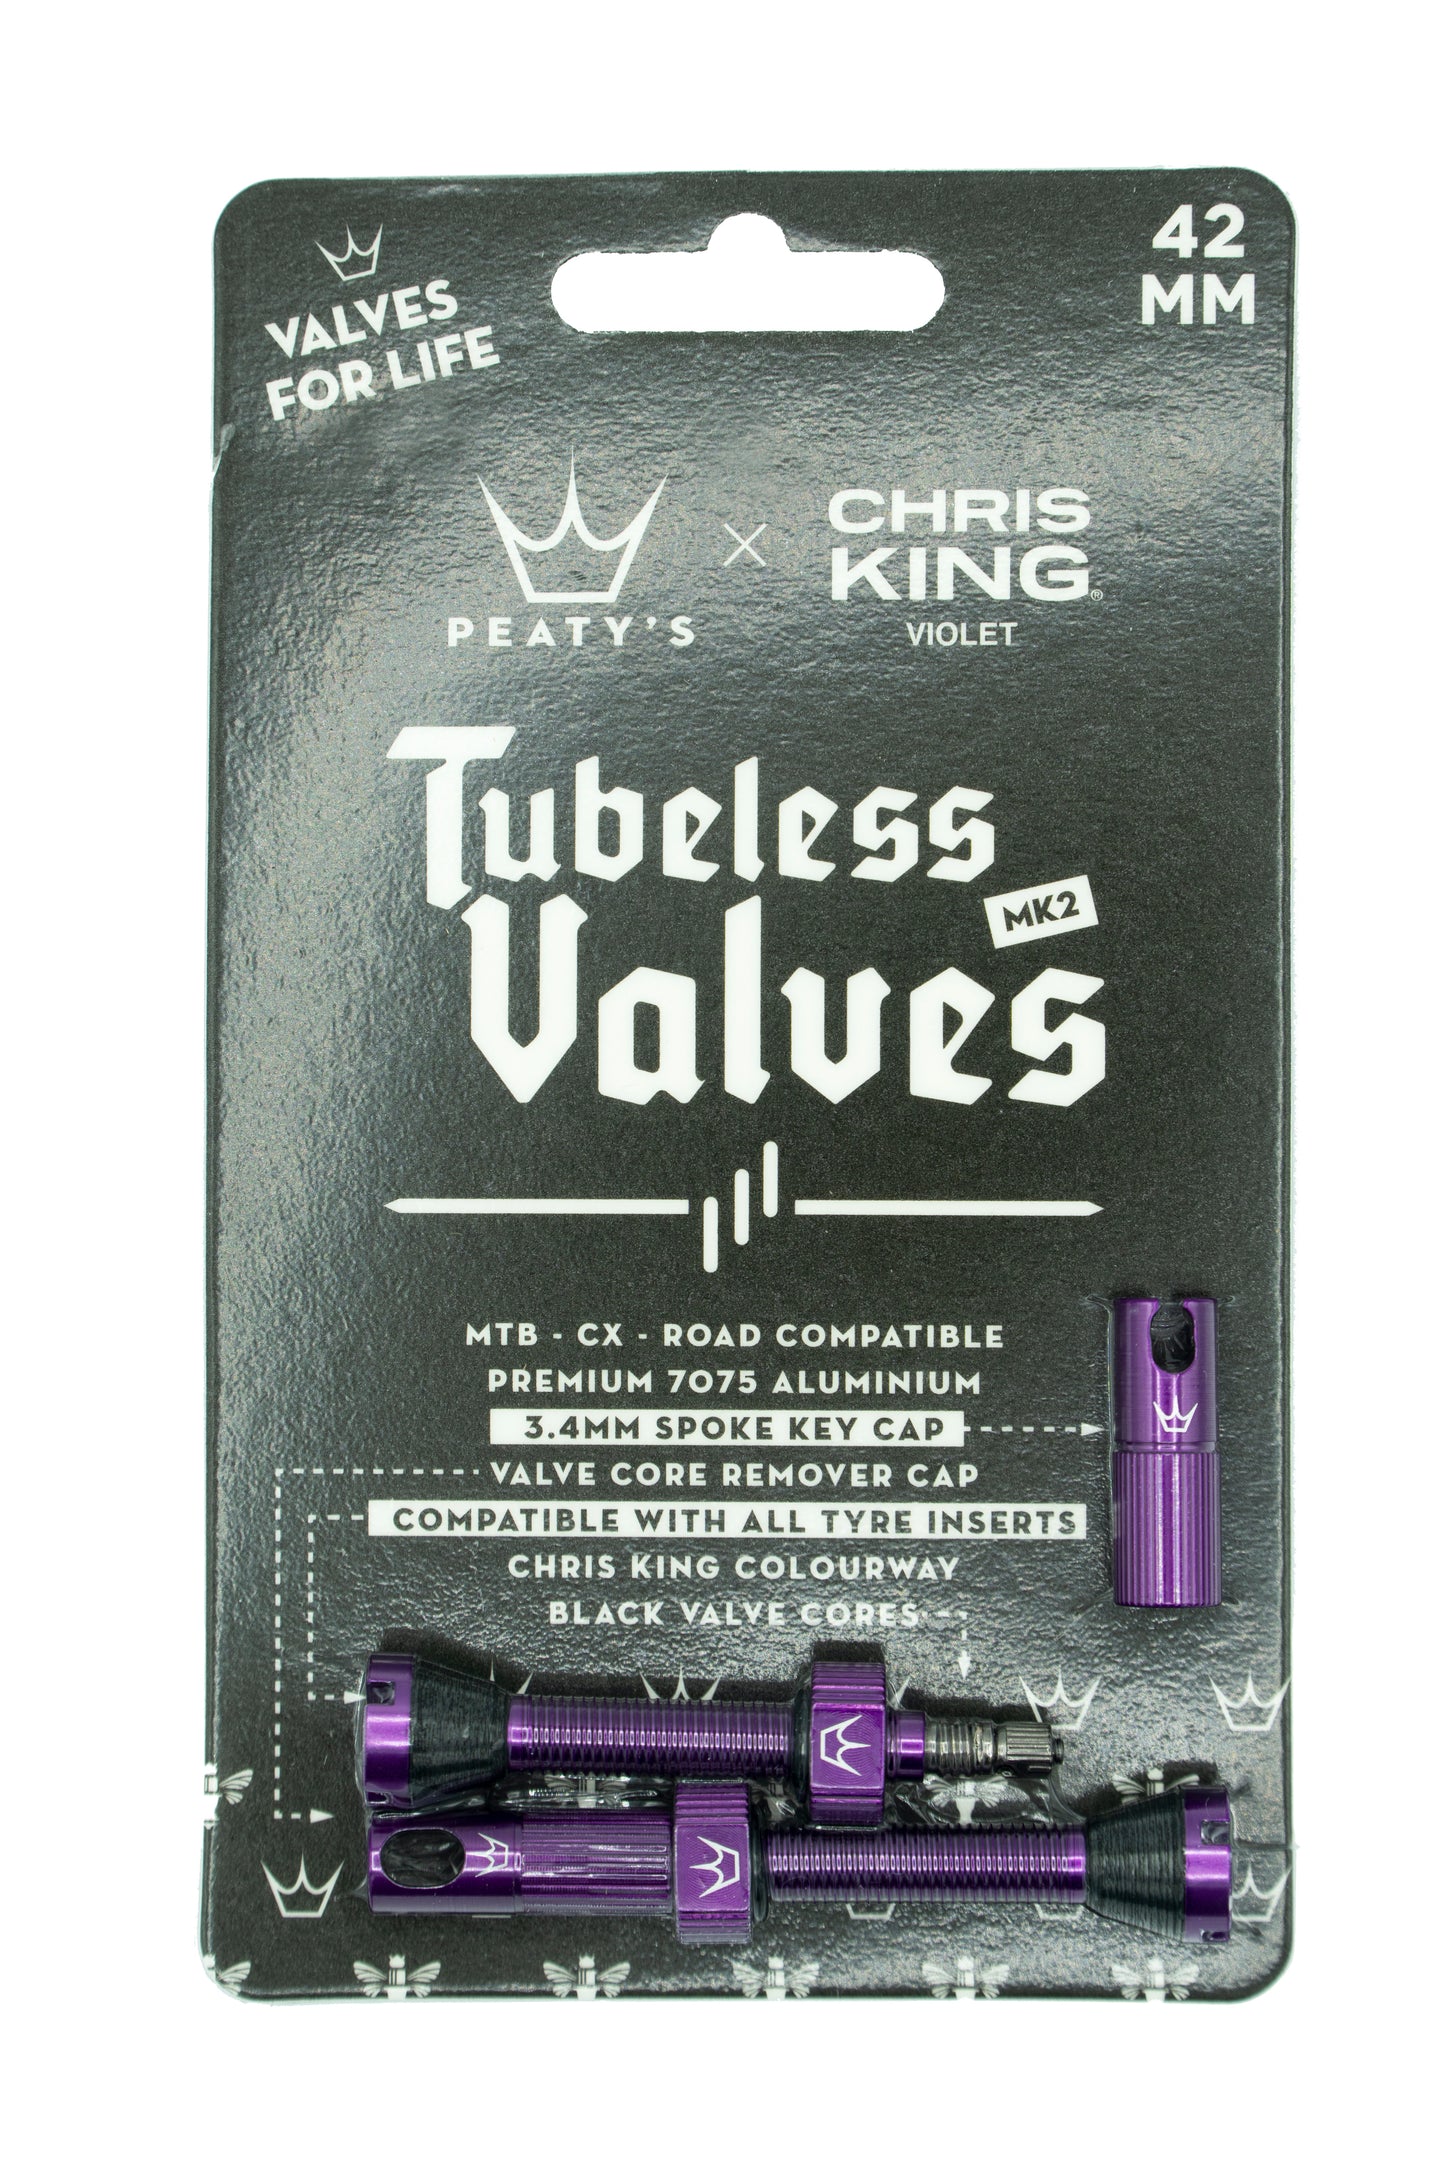 Peaty's Chris King Tubeless valves MK2 Violet - 42mm